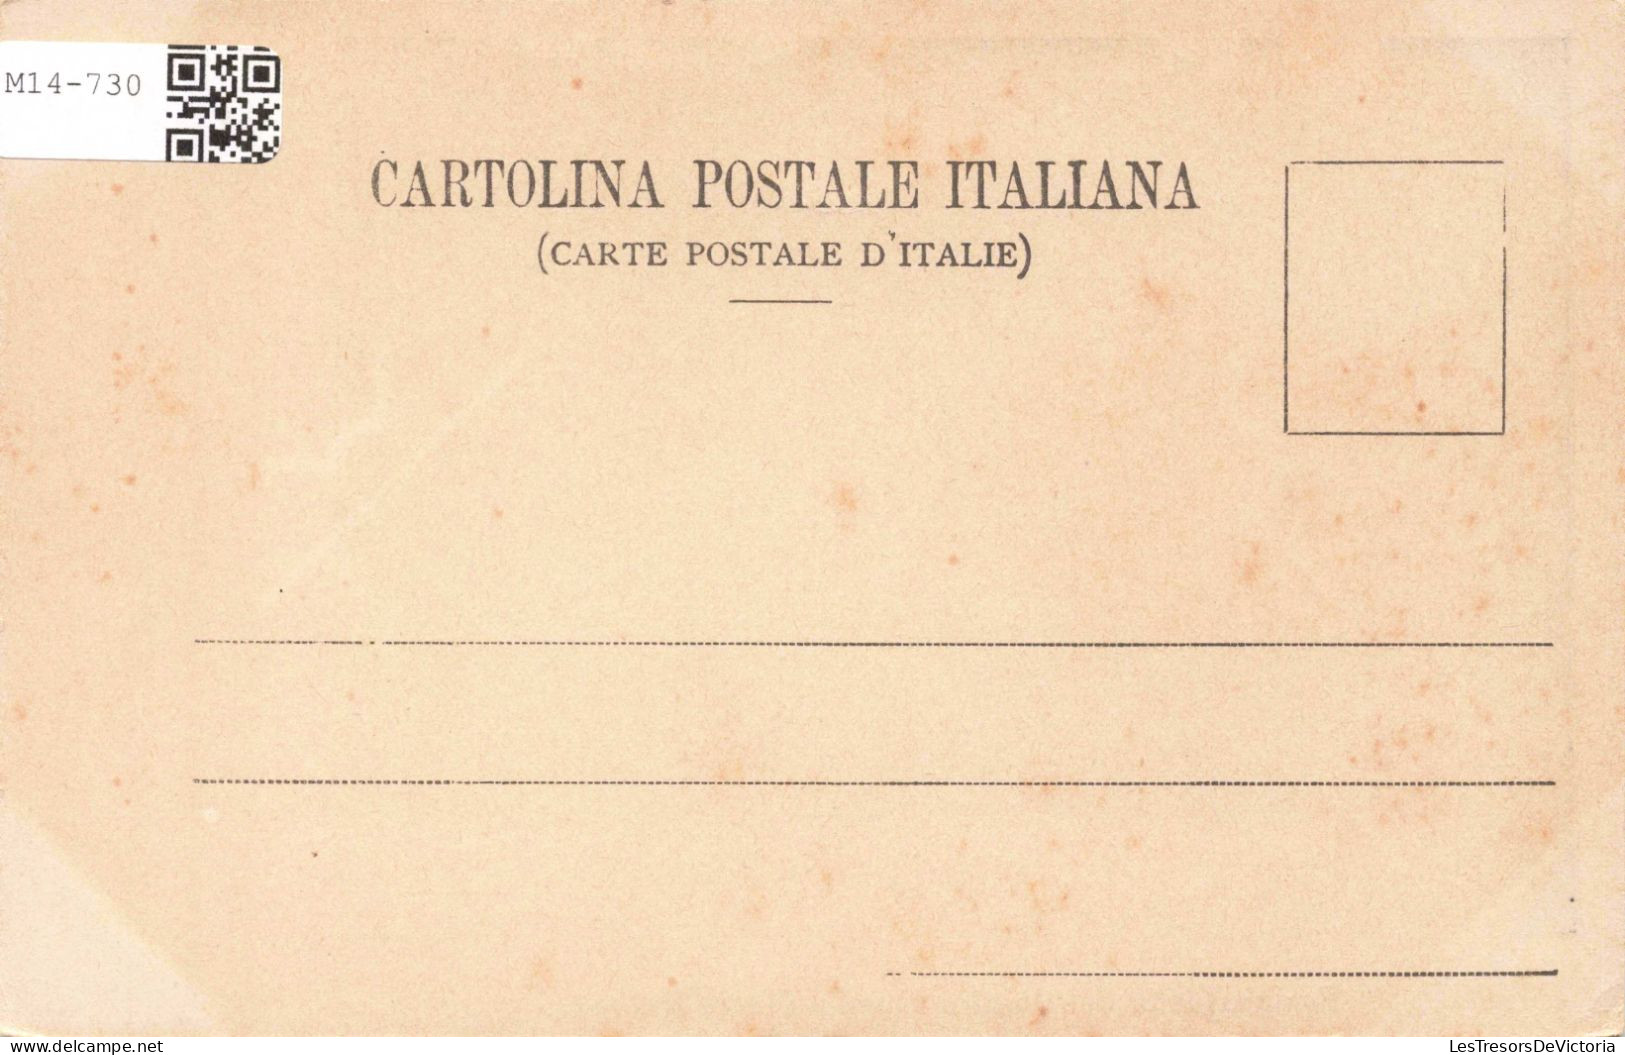 ITALIE - Roma - Fontana Detta Dei Quattro Fiumi - Piazza Navona - Carte Postale Ancienne - Orte & Plätze